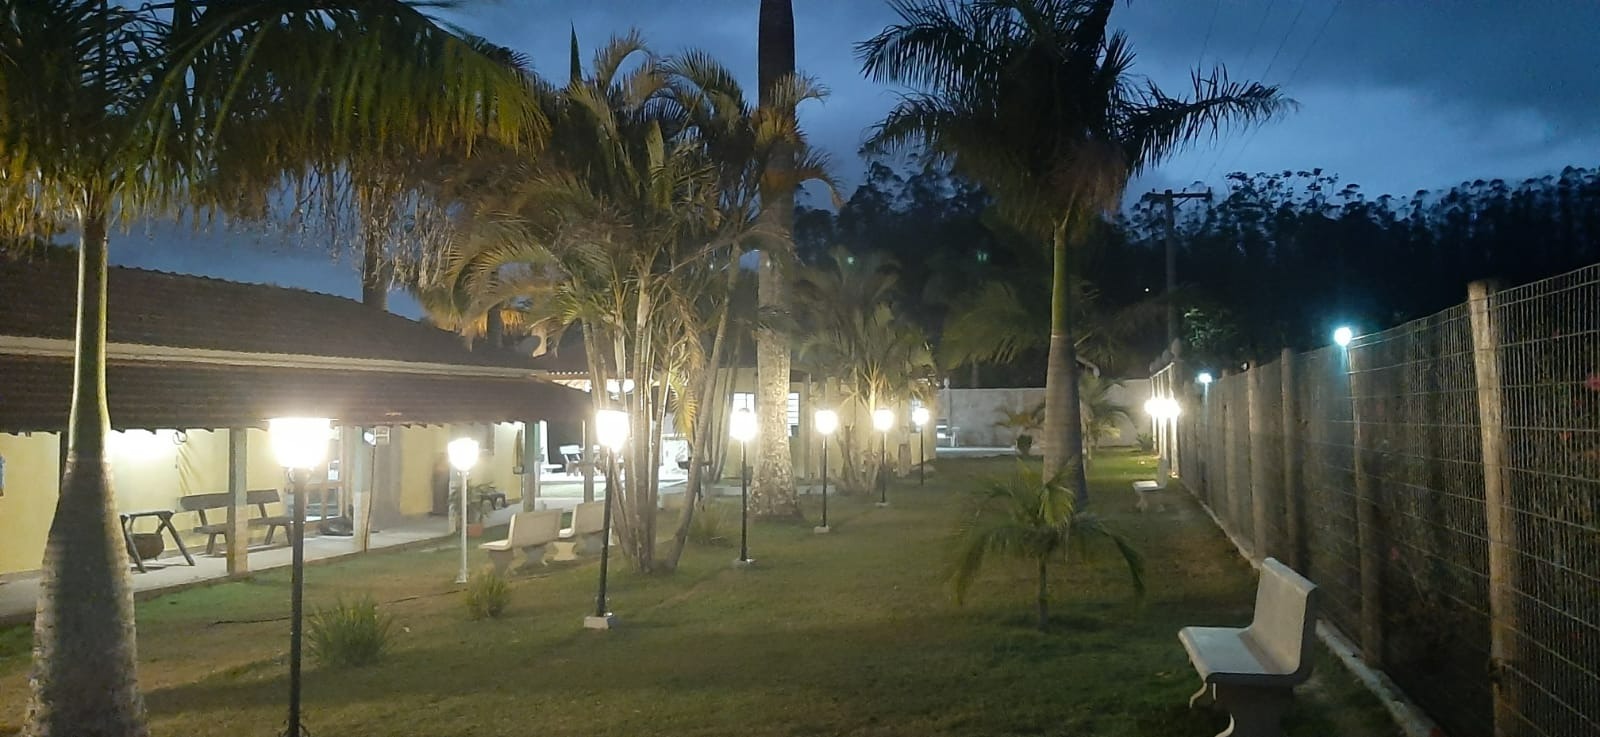 Chácara de 8.000 m² em São José dos Campos, SP